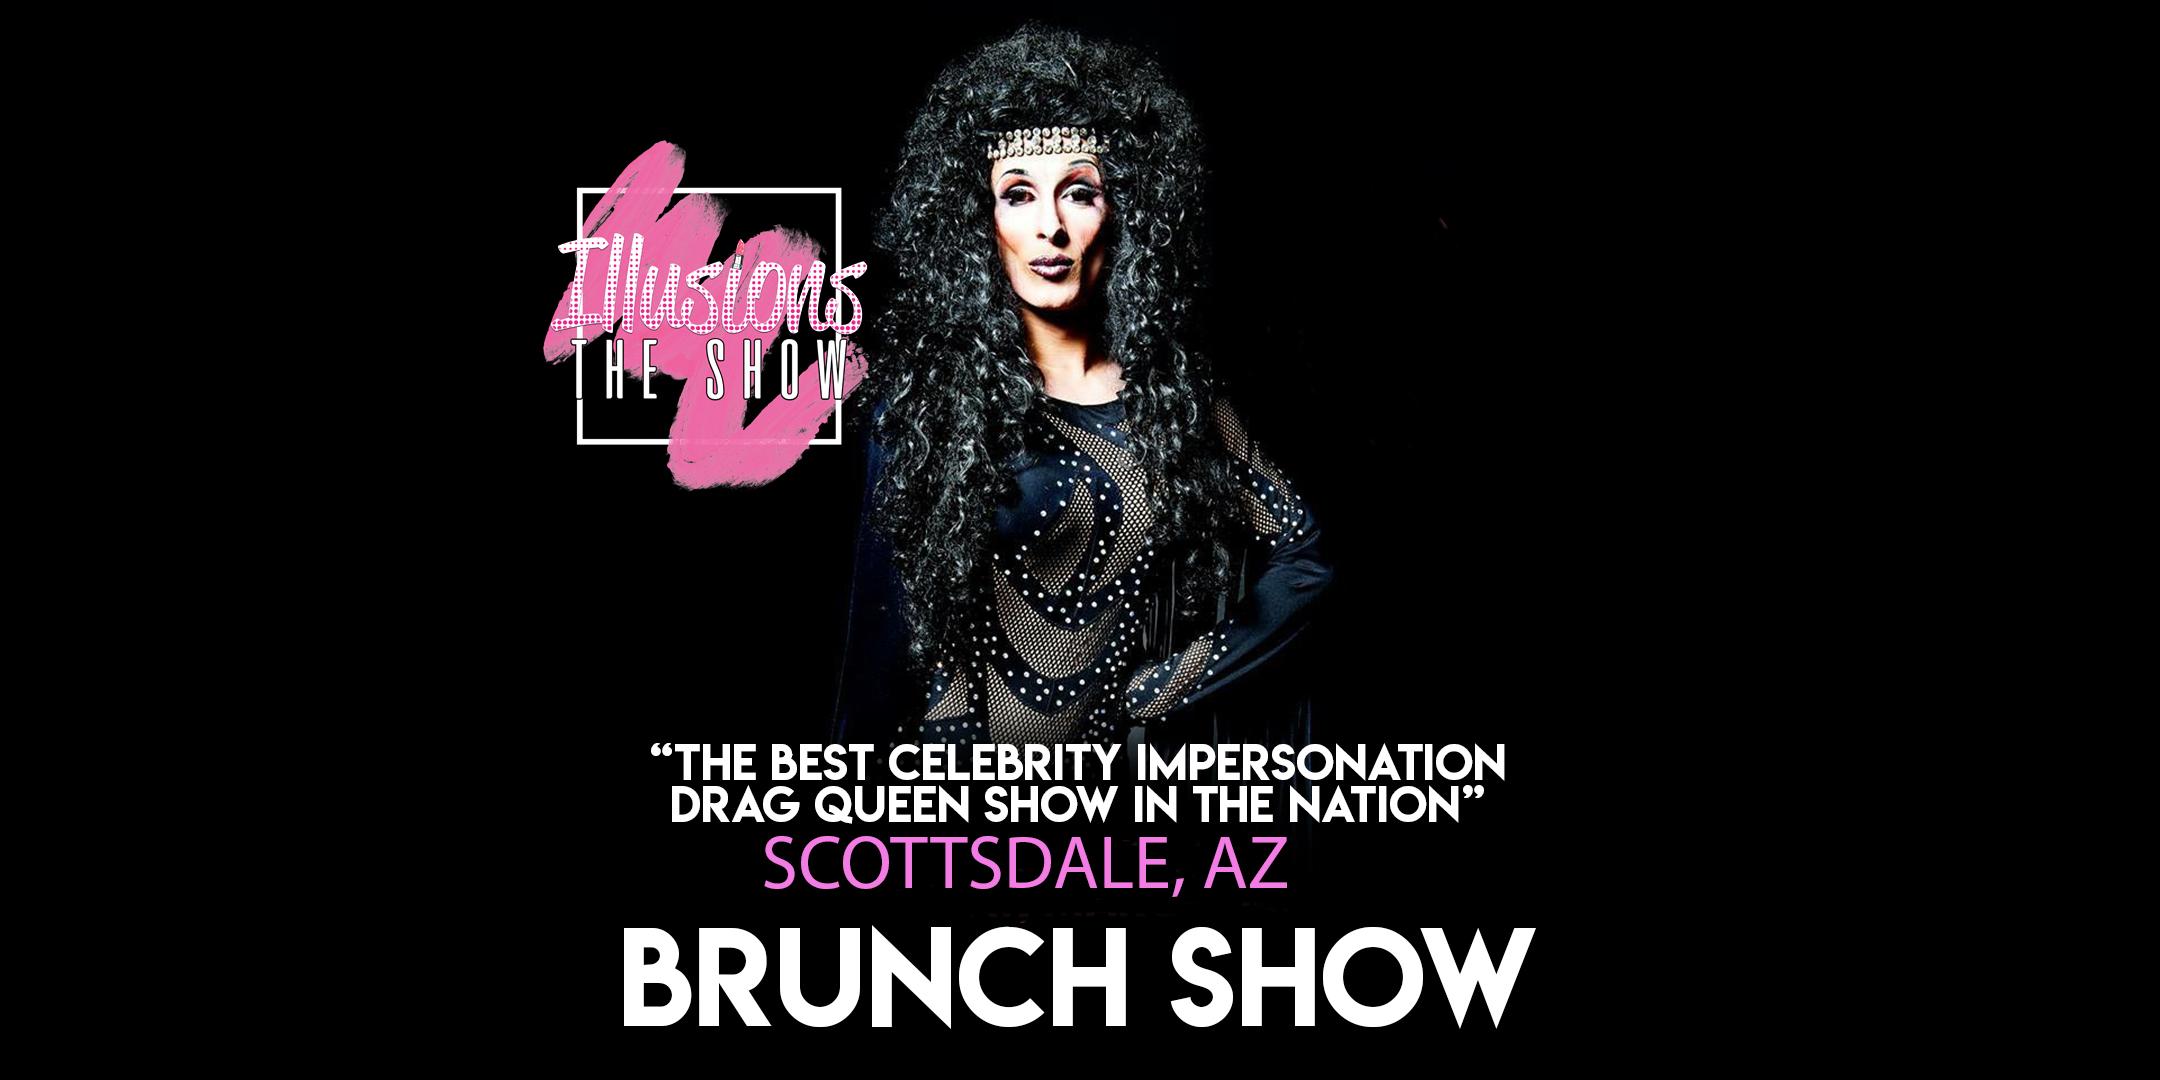 Illusions The Drag Brunch Scottsdale - Drag Queen Brunch Show - Scottsdale, AZ